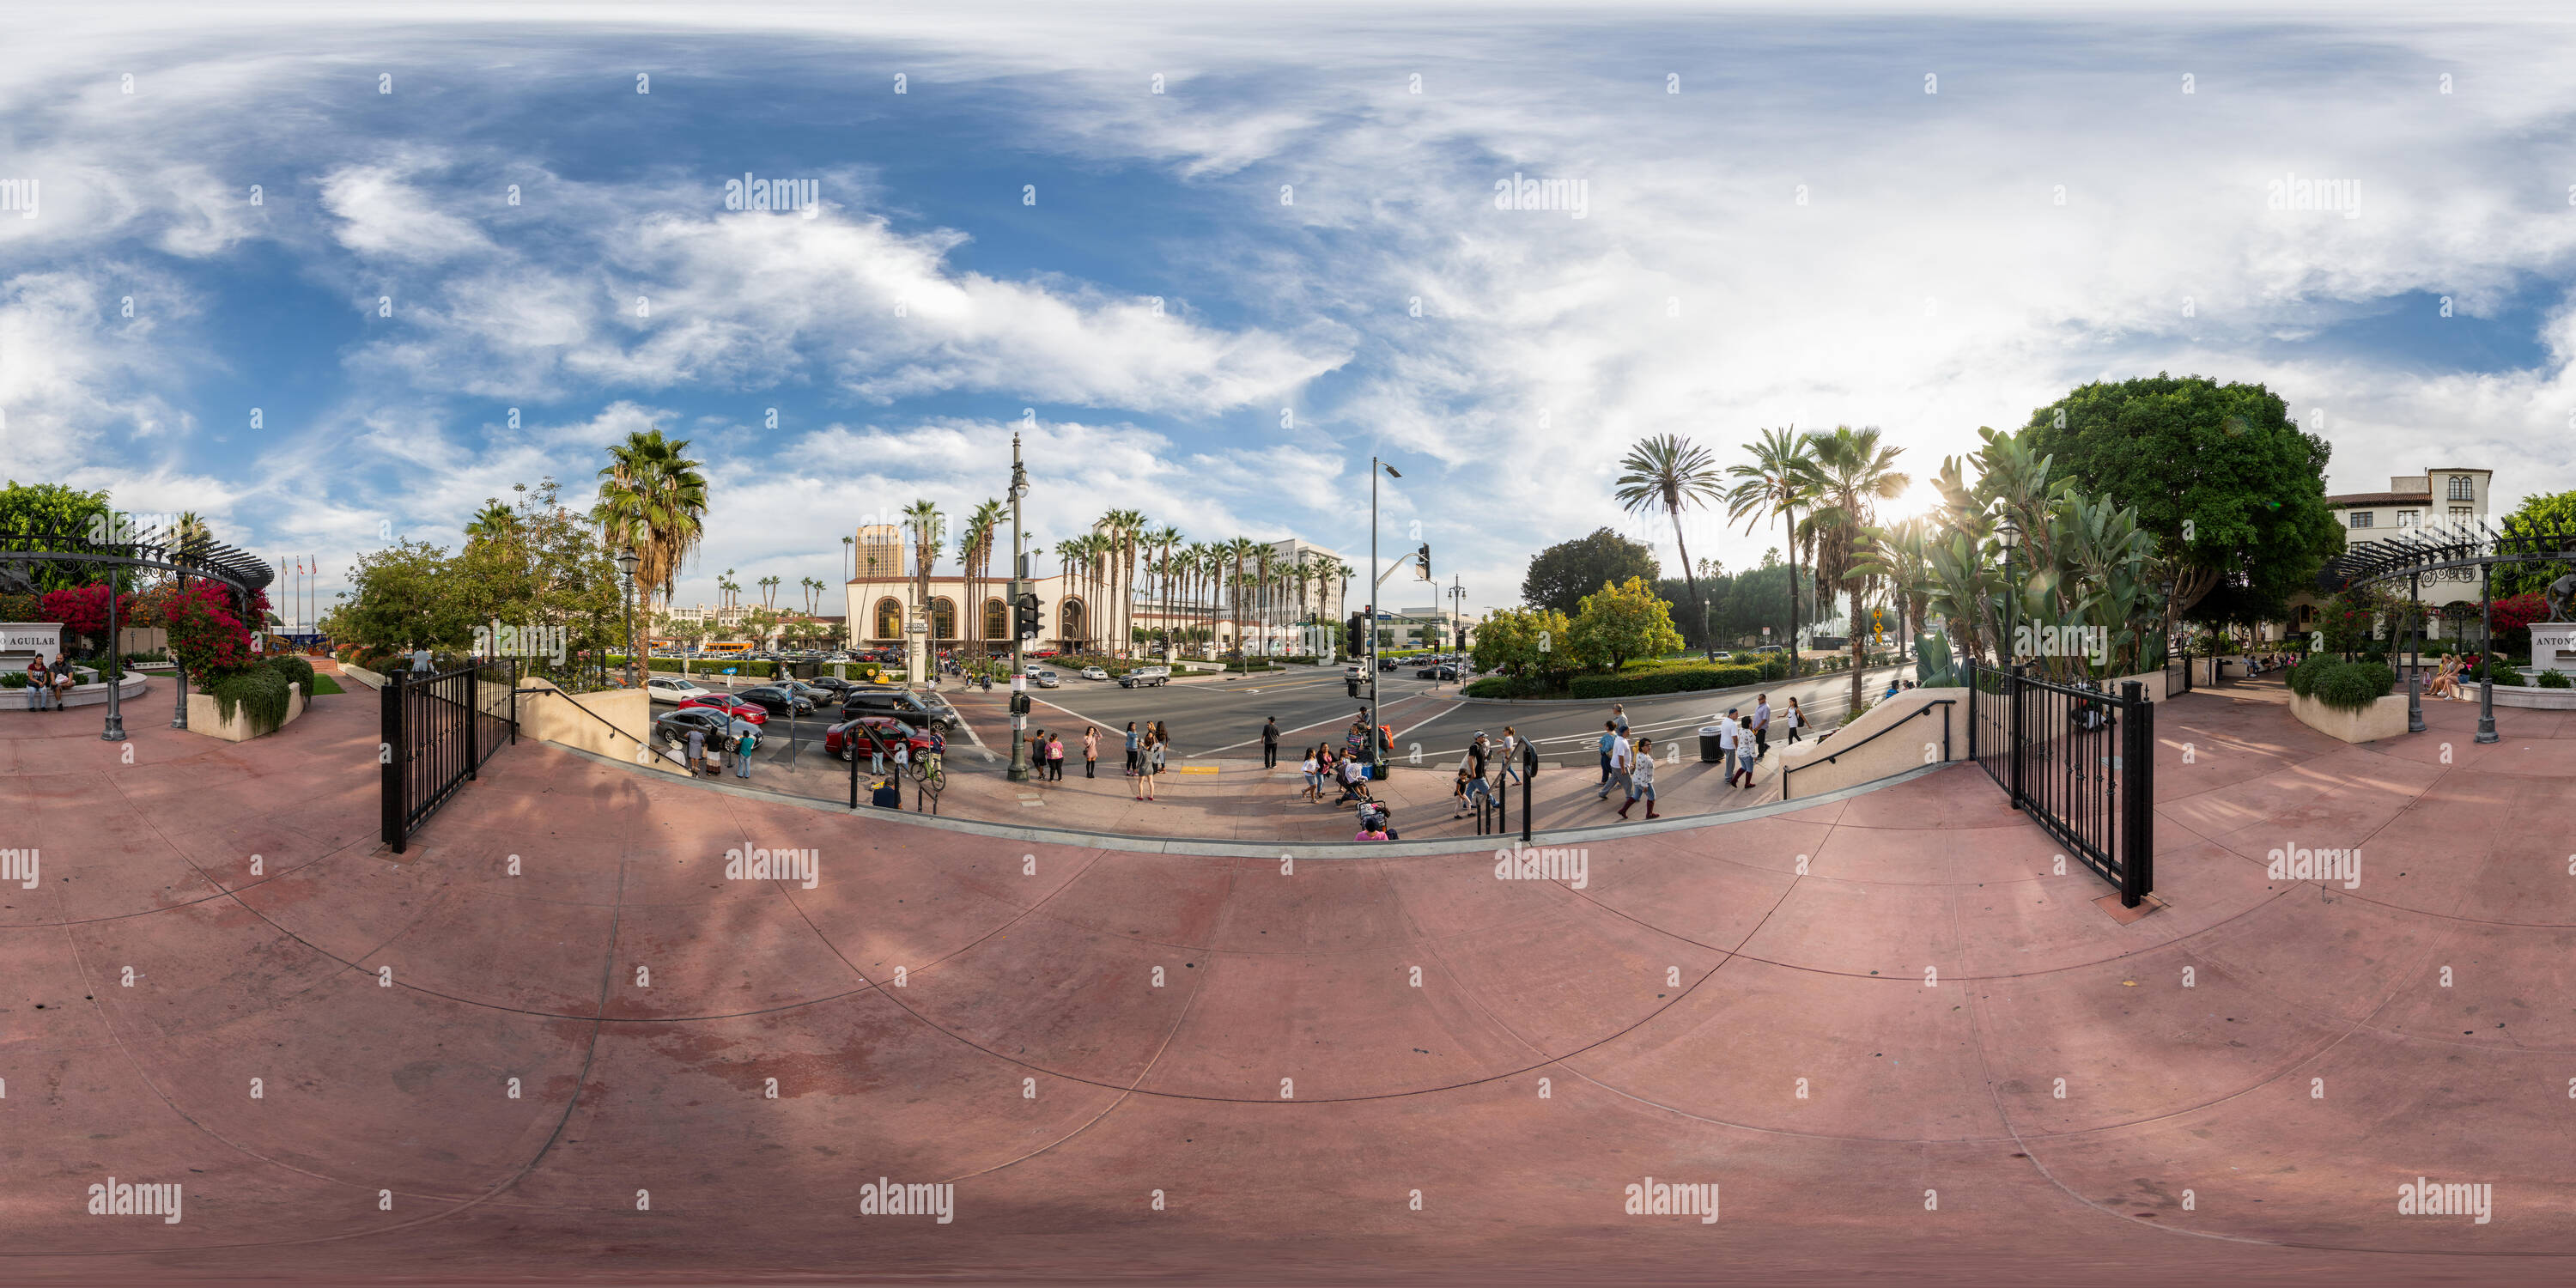 Vista panorámica en 360 grados de Vista de 360° desde la calle Olvera, a través de la Union Station, el centro de Los Angeles, California.